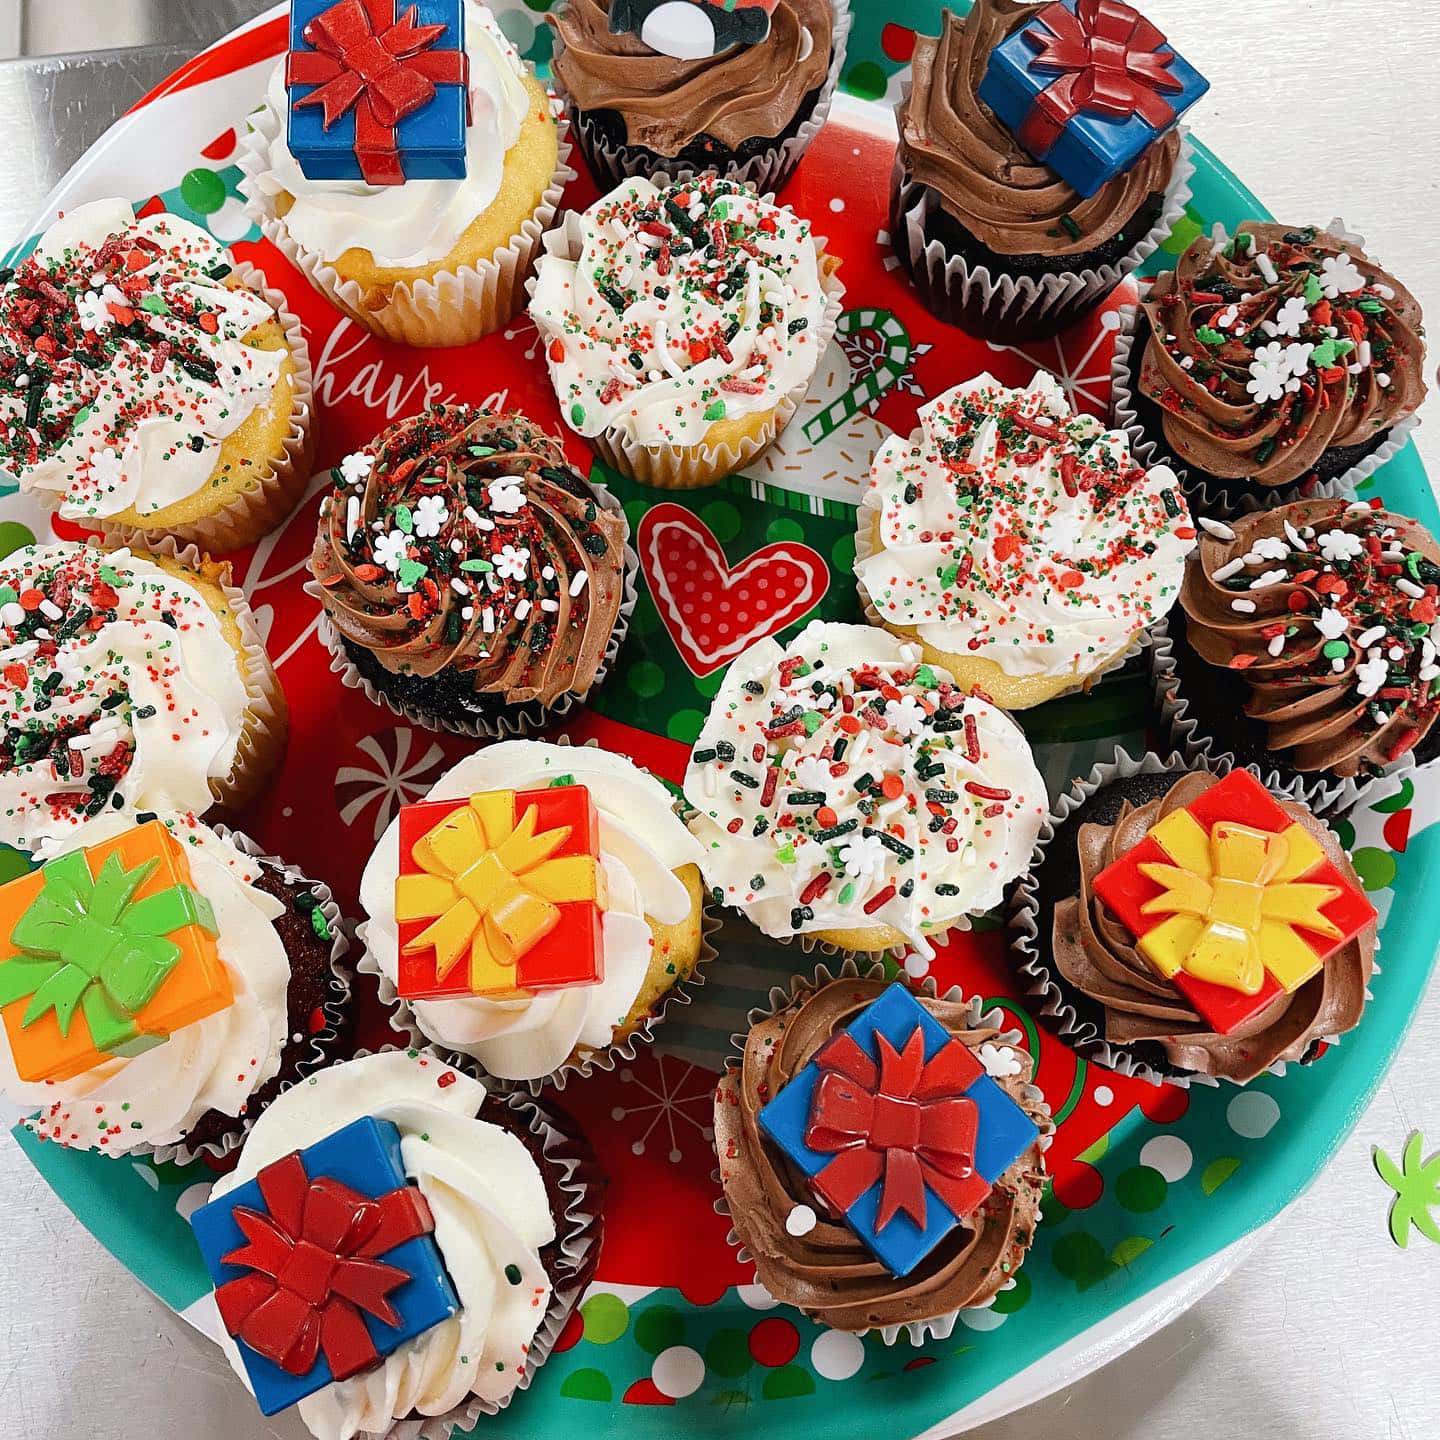 Team appreciation cupcakes